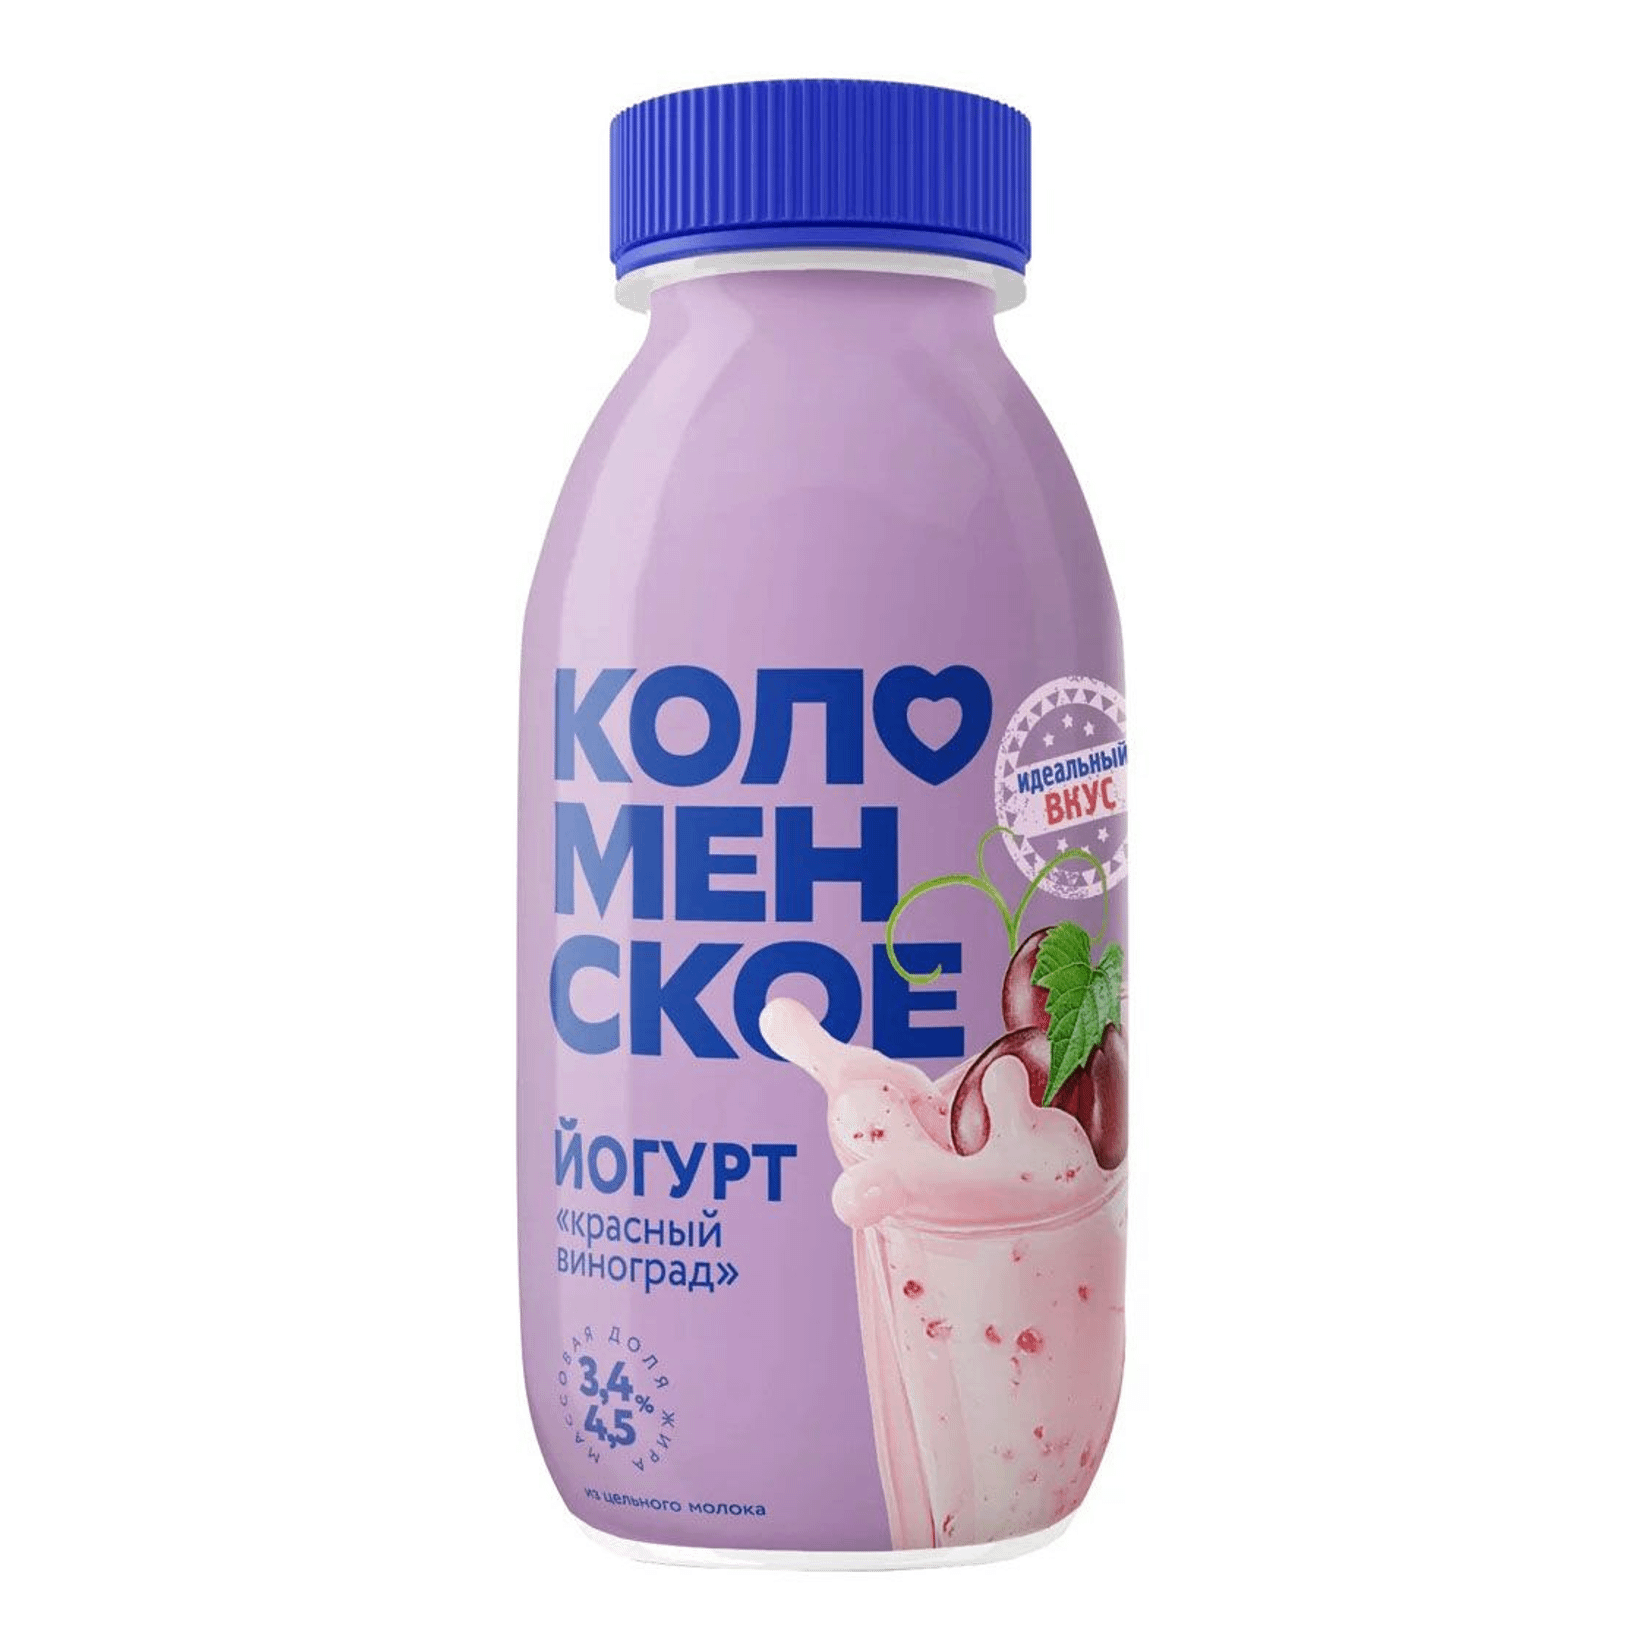 Йогурт питьевой Коломенский красный виноград 3,4 - 4,5% 260 мл